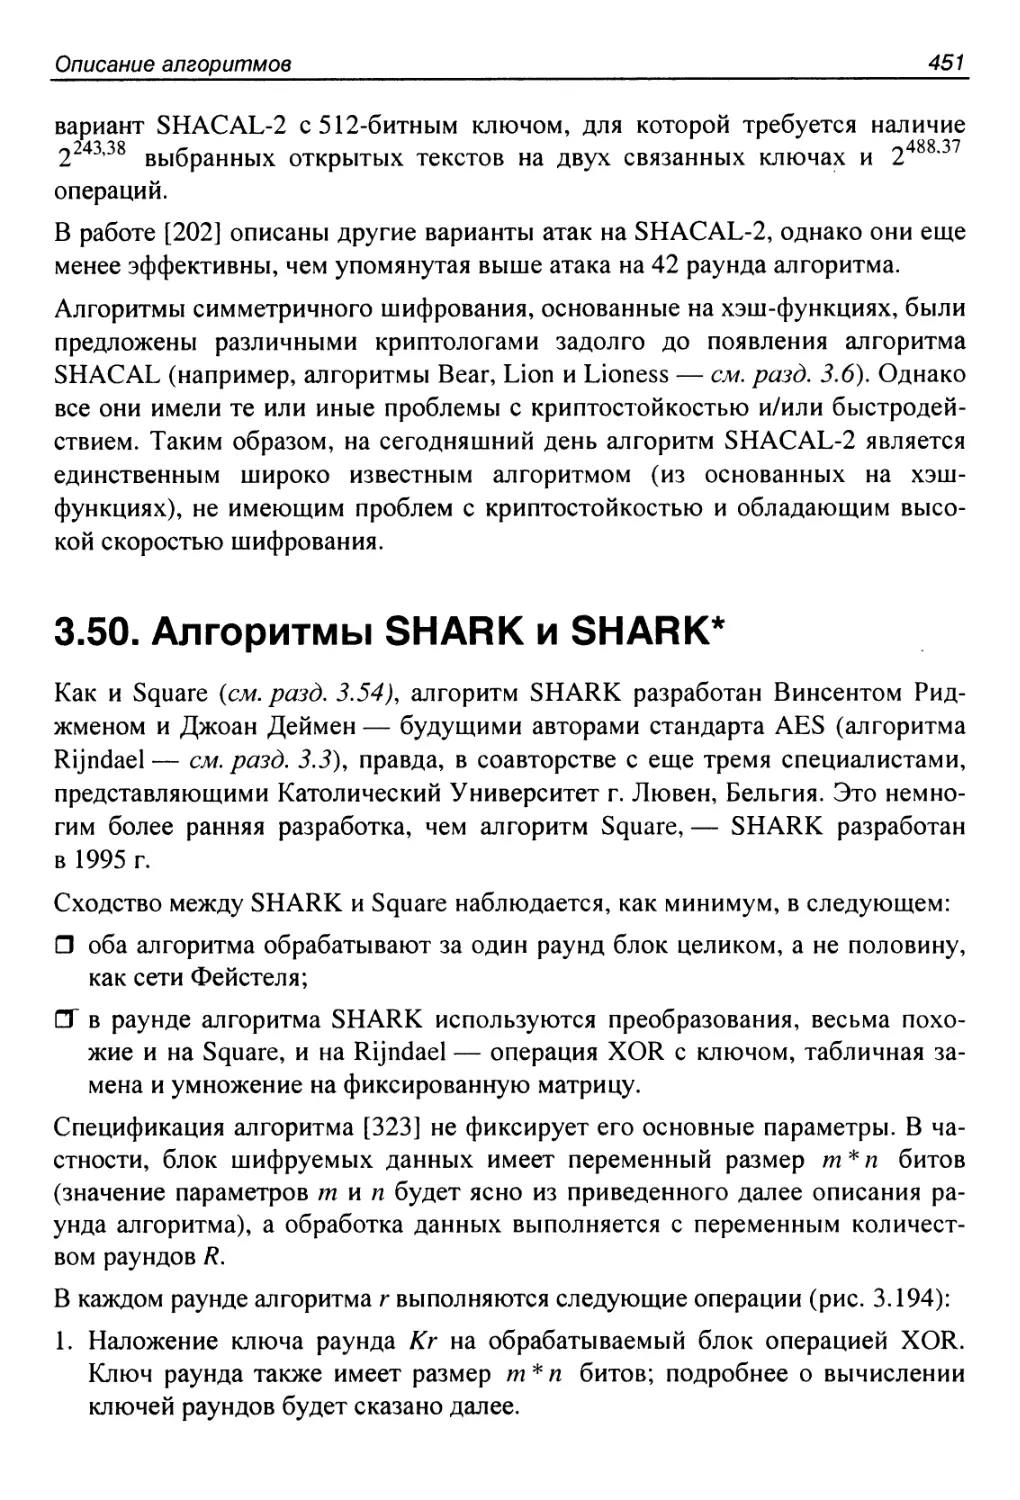 3.50. Алгоритмы SHARK и SHARK*